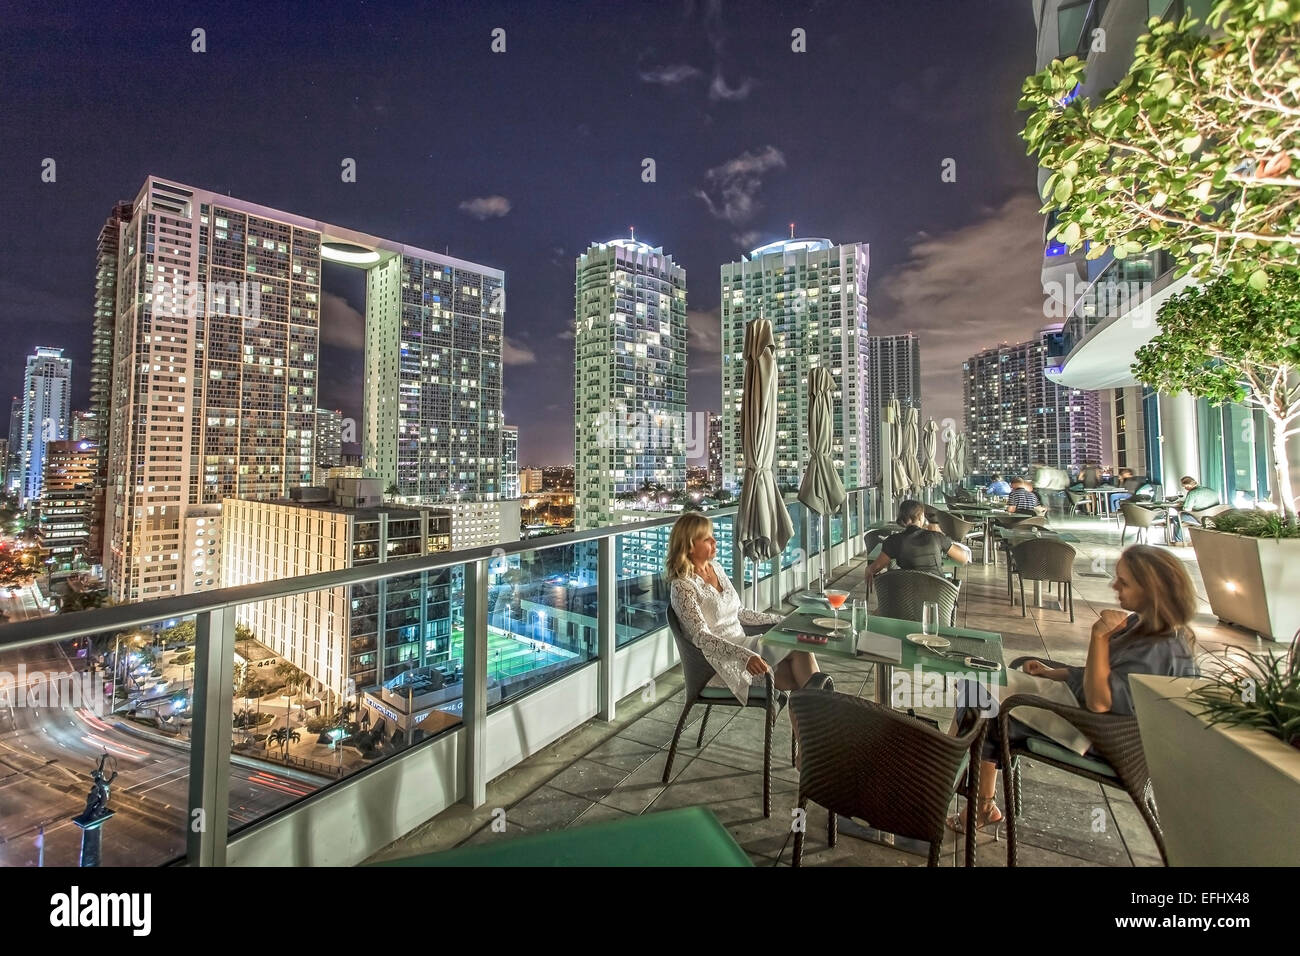 Terrasse de restaurant gastronomique La région 31 de l'hôtel Epic, le centre-ville de Miami, Miami, Floride, USA Banque D'Images